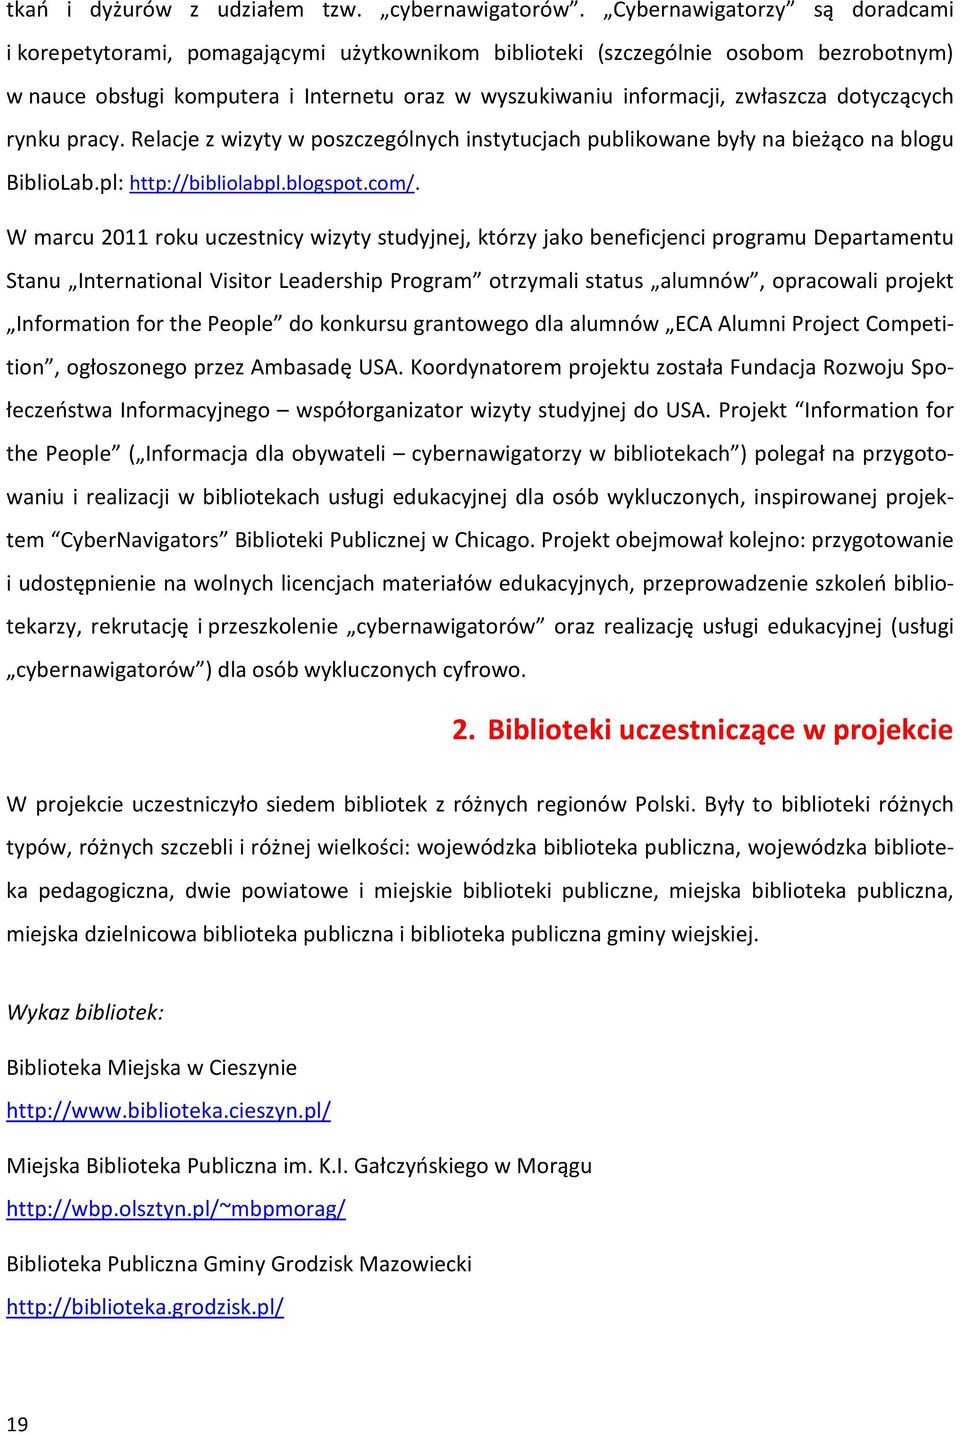 dotyczących rynku pracy. Relacje z wizyty w poszczególnych instytucjach publikowane były na bieżąco na blogu BiblioLab.pl: http://bibliolabpl.blogspot.com/.